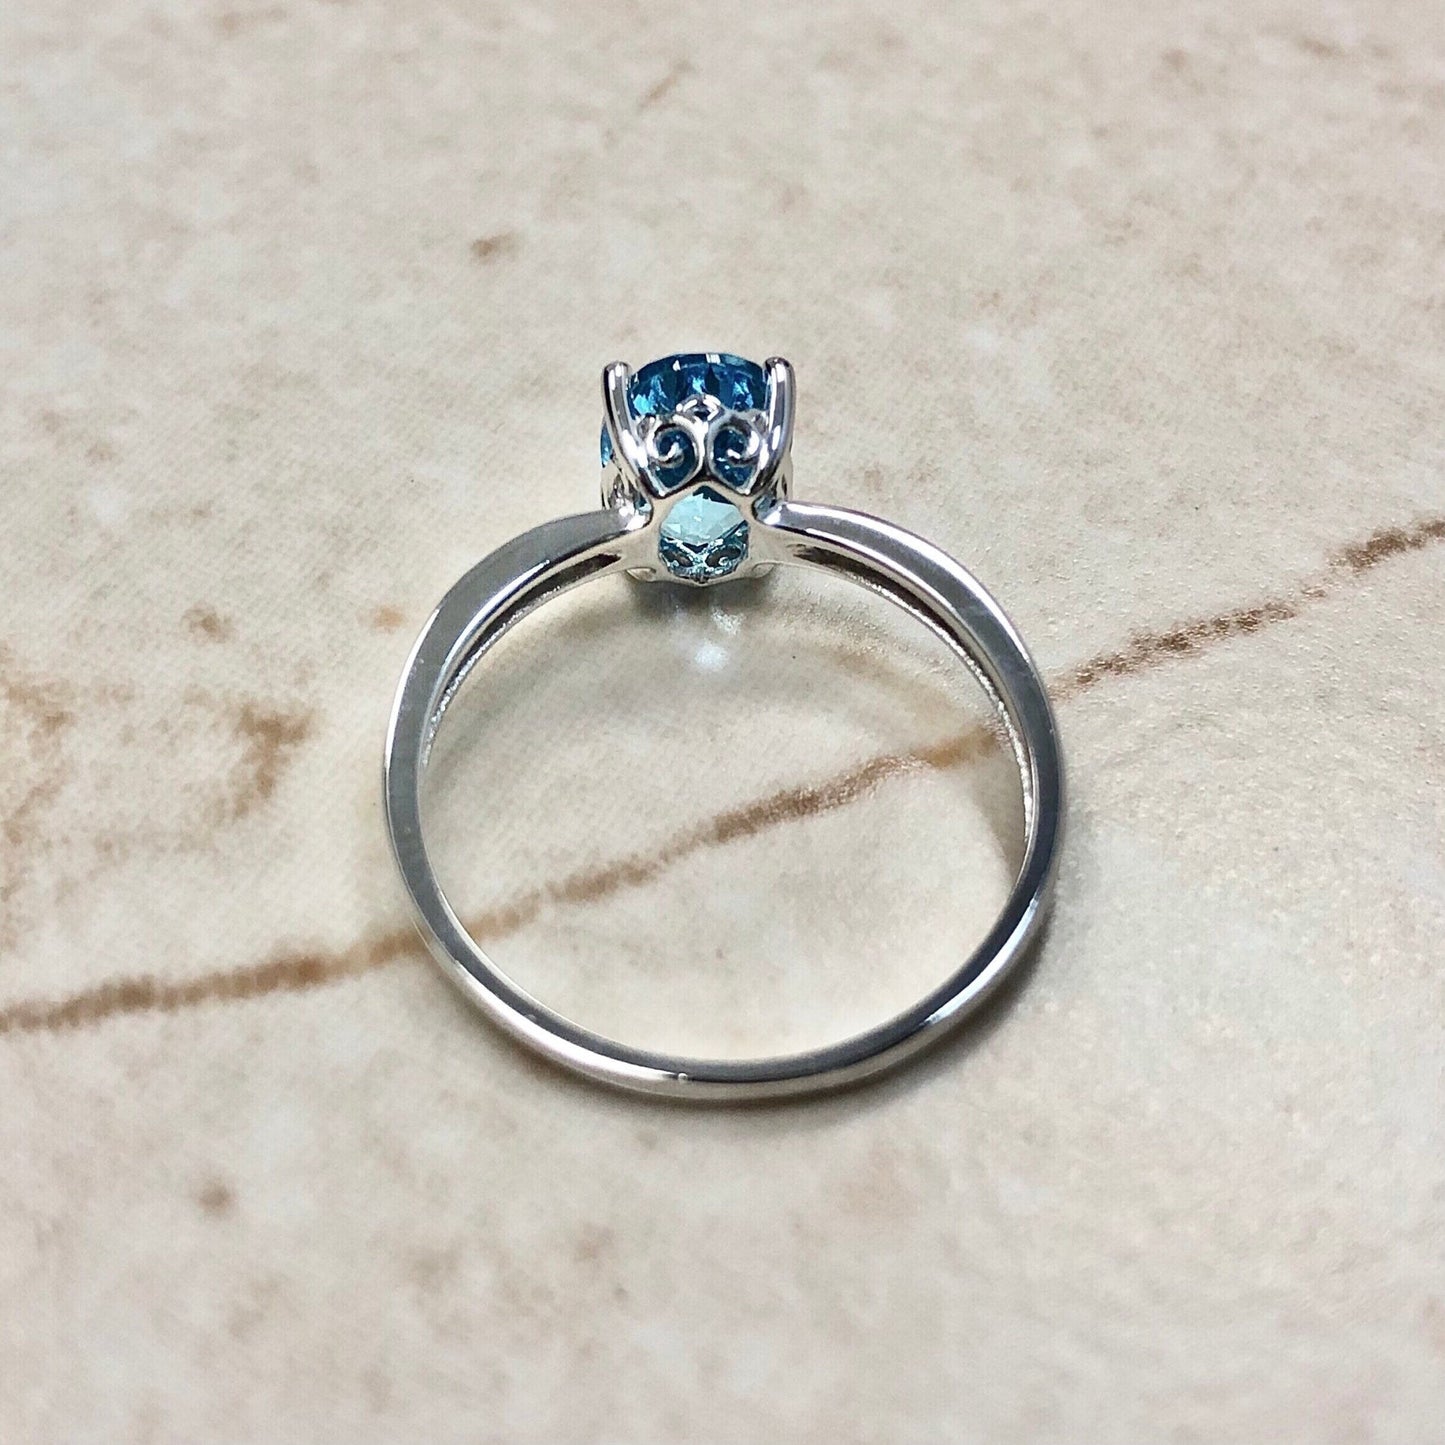 14K Oval Blue Topaz & Diamond Ring - White Gold Blue Topaz Solitaire Ring - November/December Birthstone - Birthday Gift - Best Gift For Her